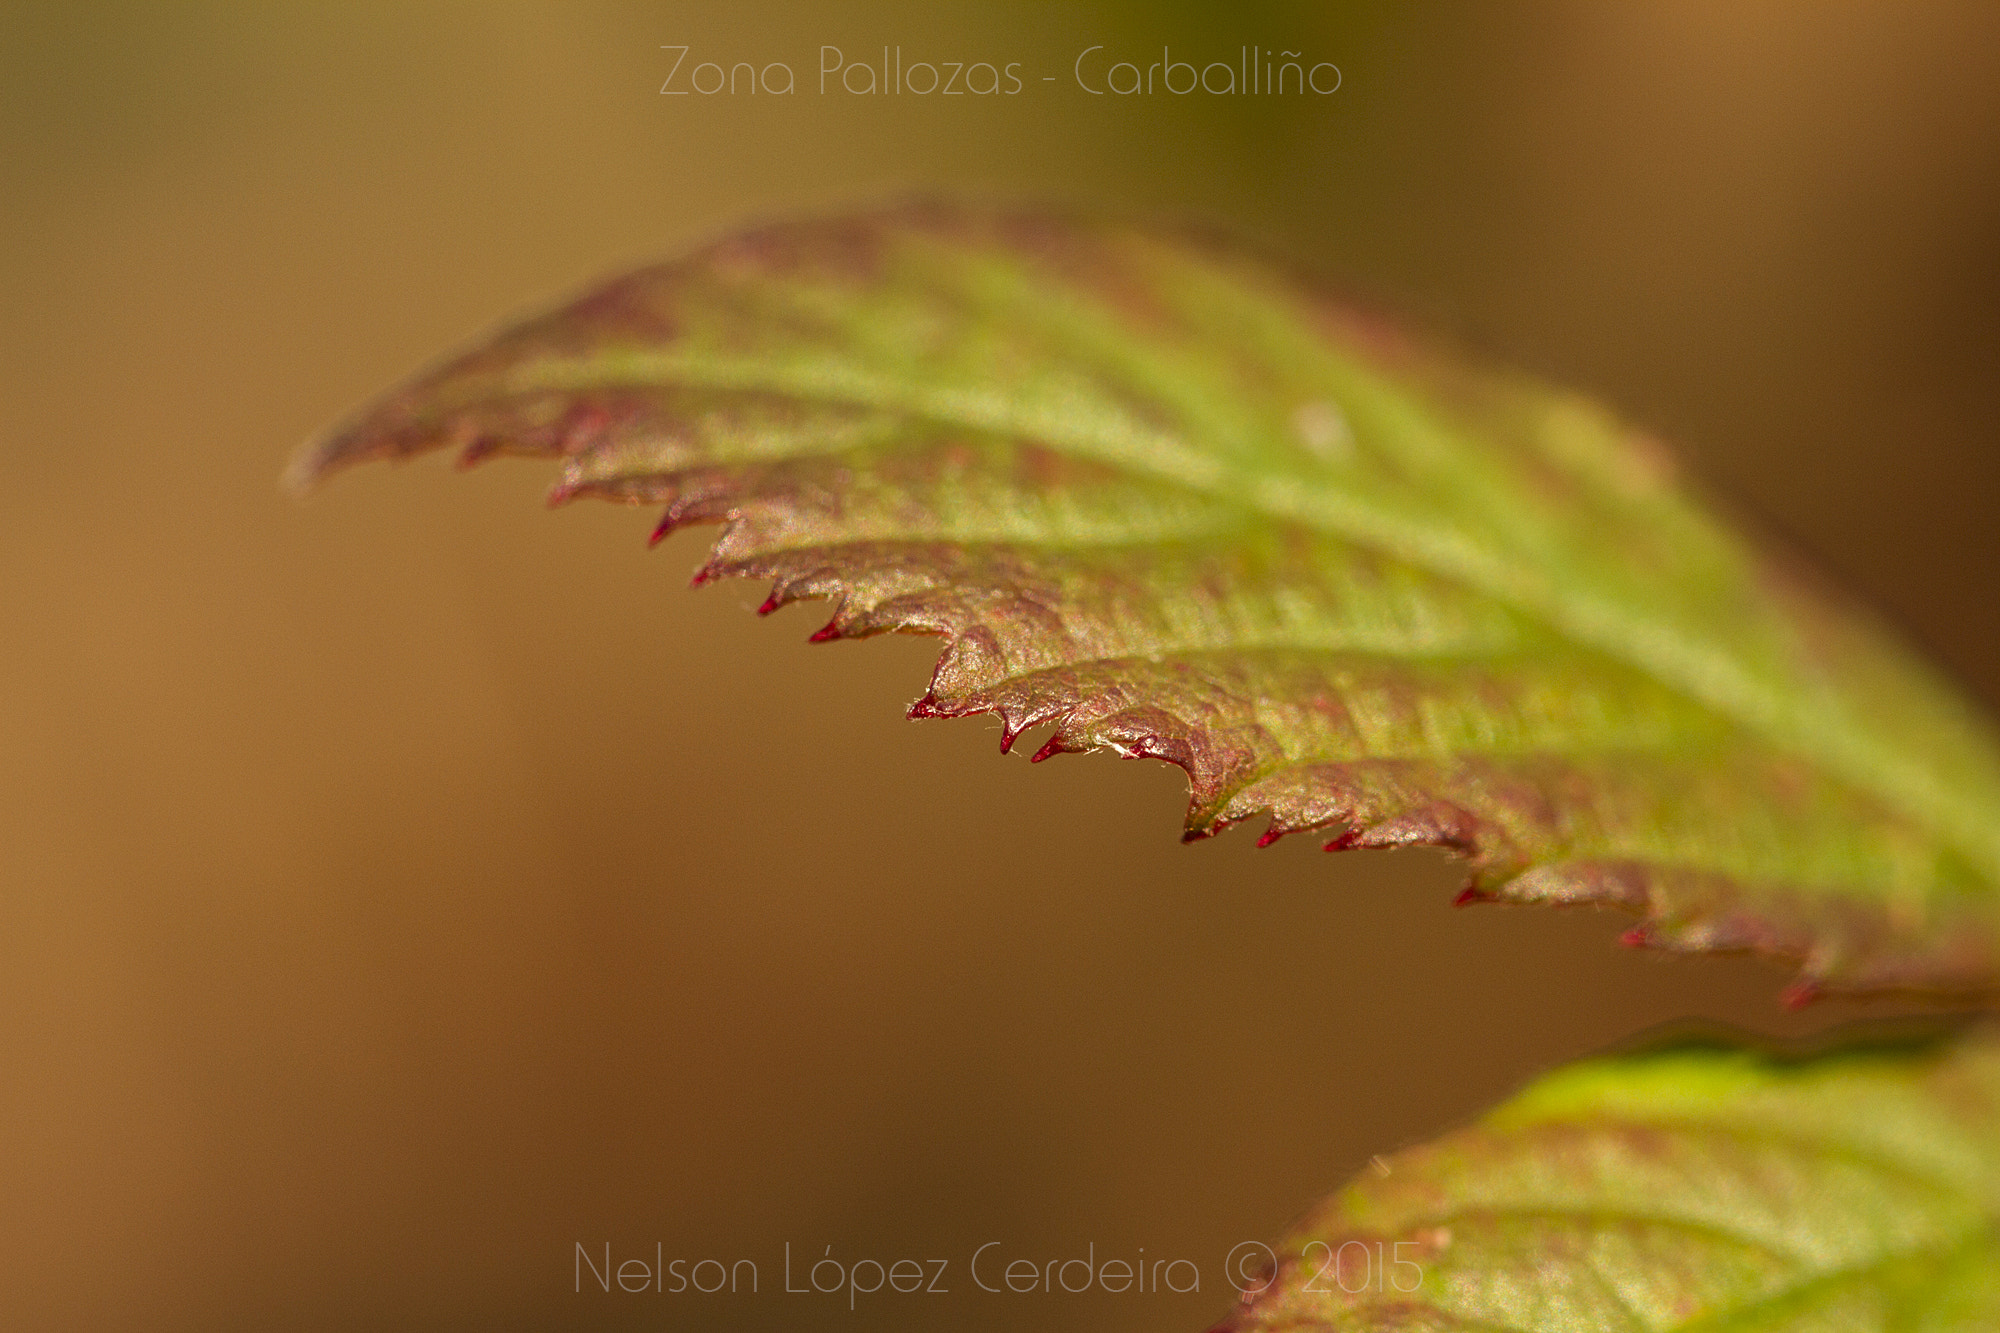 Canon EOS 7D sample photo. Zona pallozas 24 photography